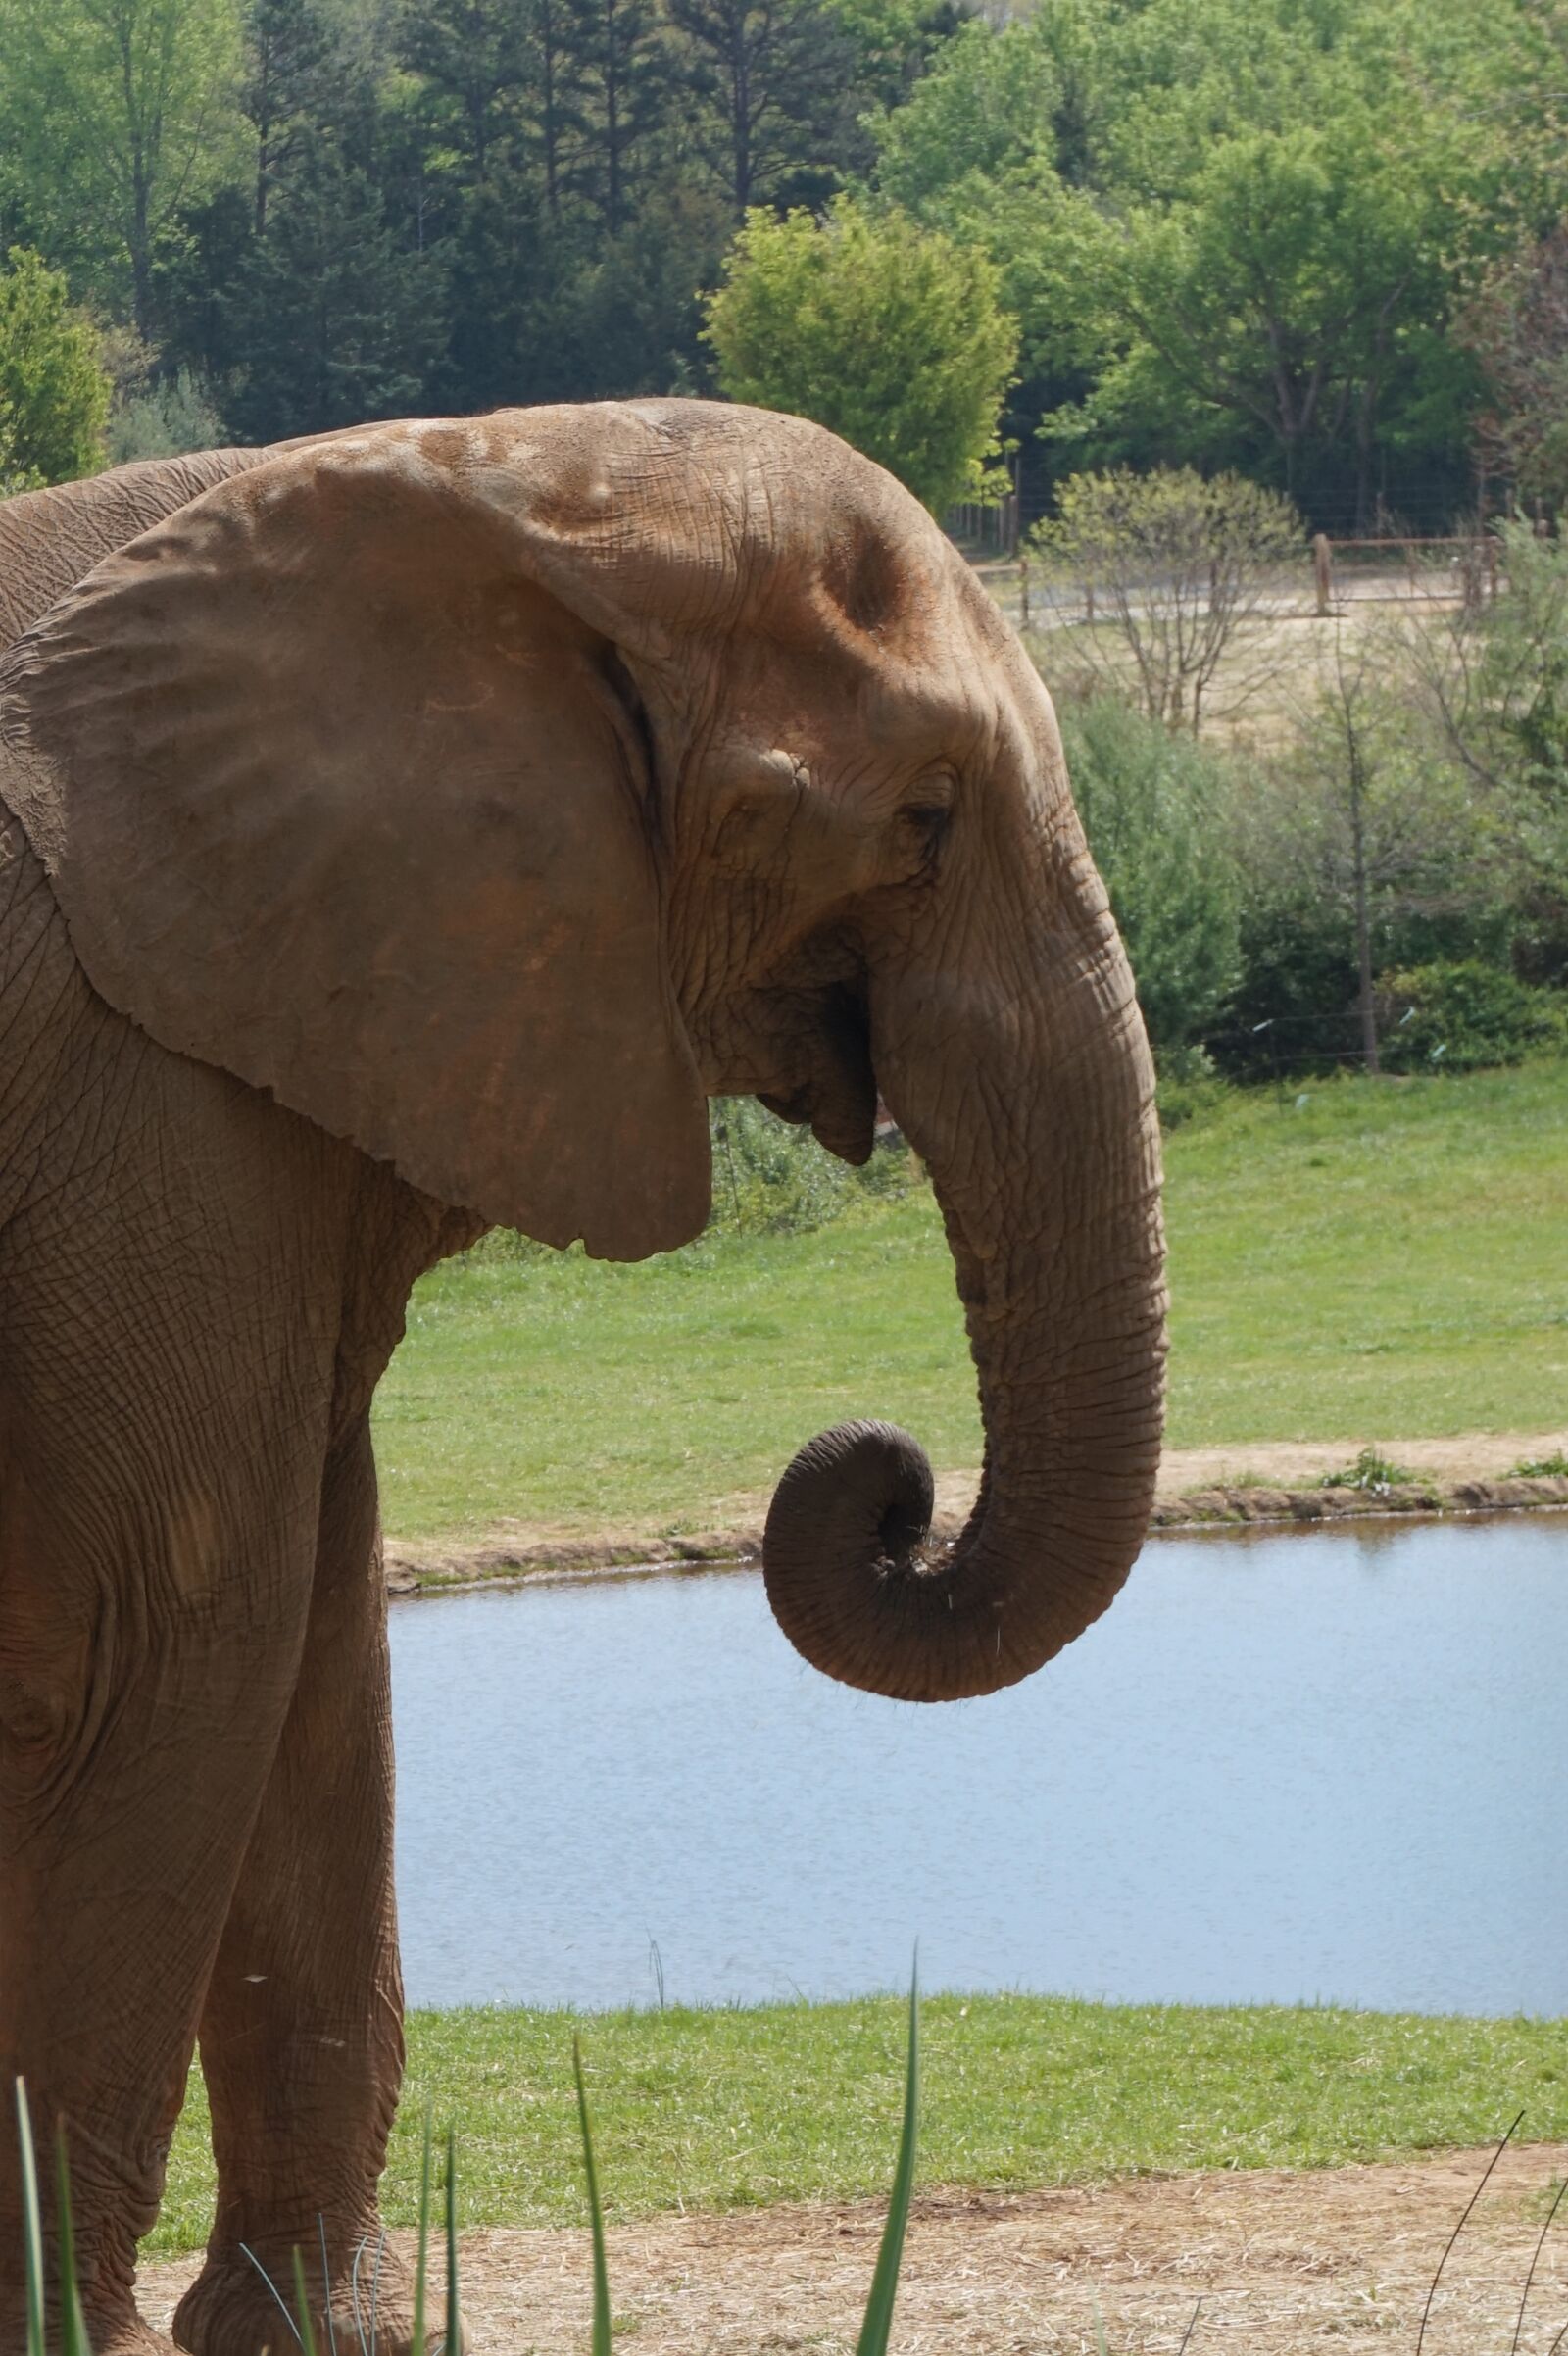 Sony Alpha a5000 (ILCE 5000) sample photo. Elephant, pachyderm, safari photography